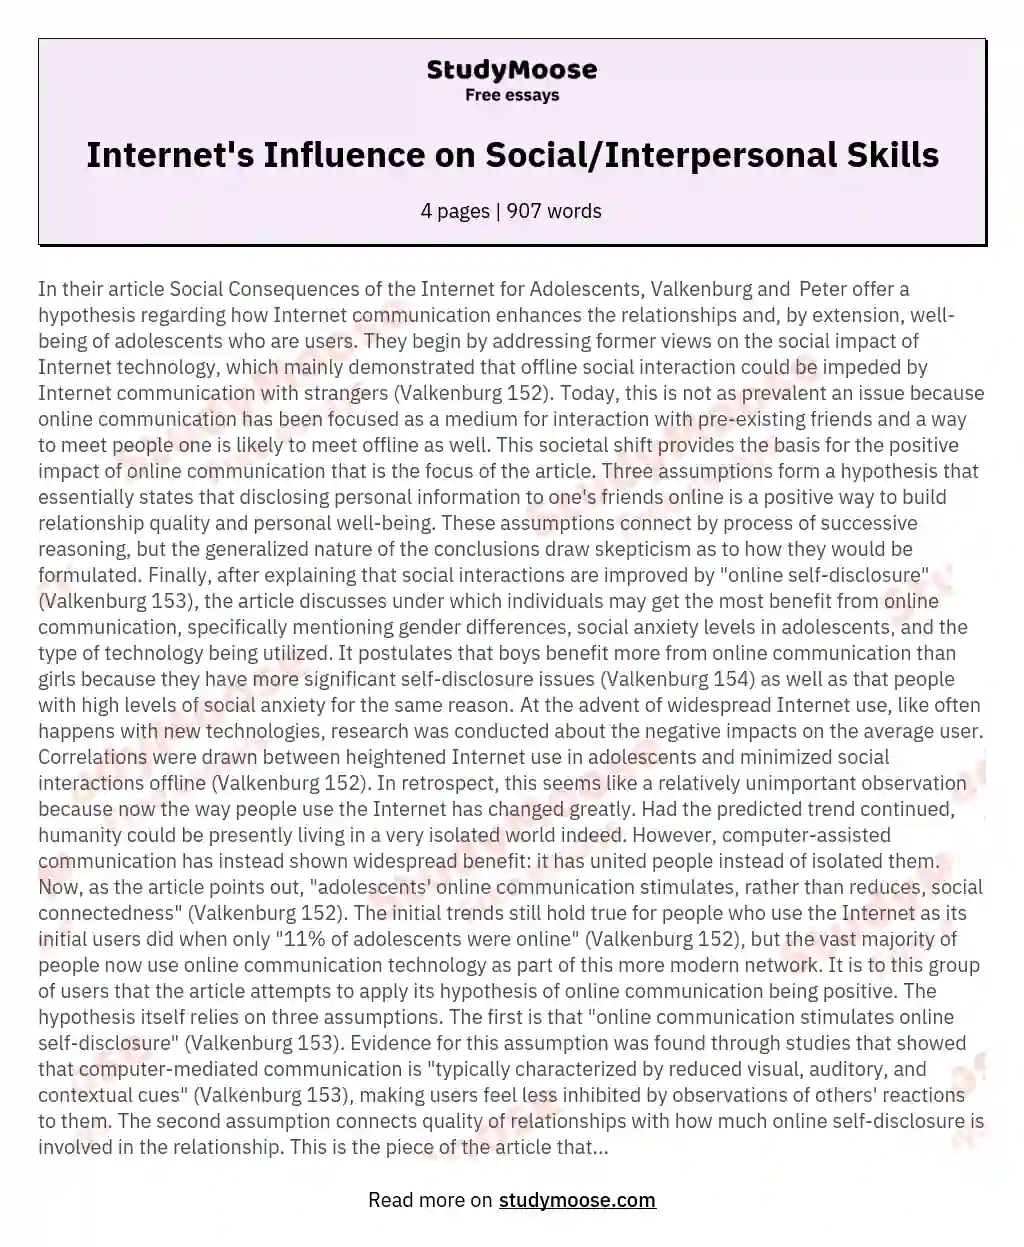 Internet's Influence on Social/Interpersonal Skills essay